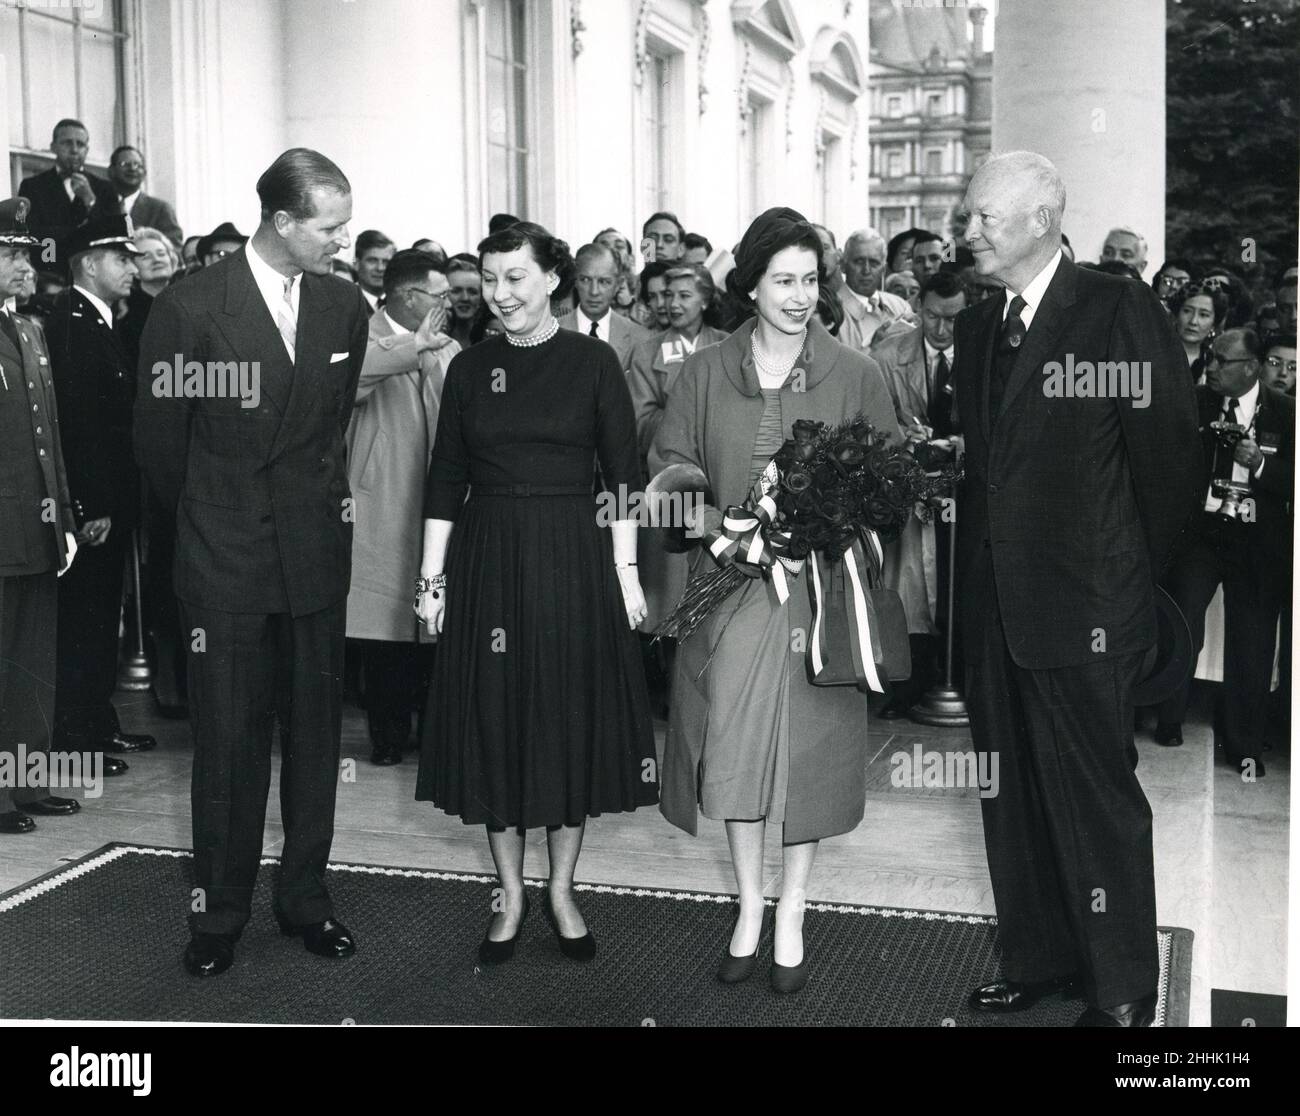 17 de octubre de 1957 -- La reina Isabel II y el príncipe Felipe son recibidos por el presidente y la señora Eisenhower durante la visita estatal de la realeza a los Estados Unidos. Foto: Abbie Rowe Foto de stock